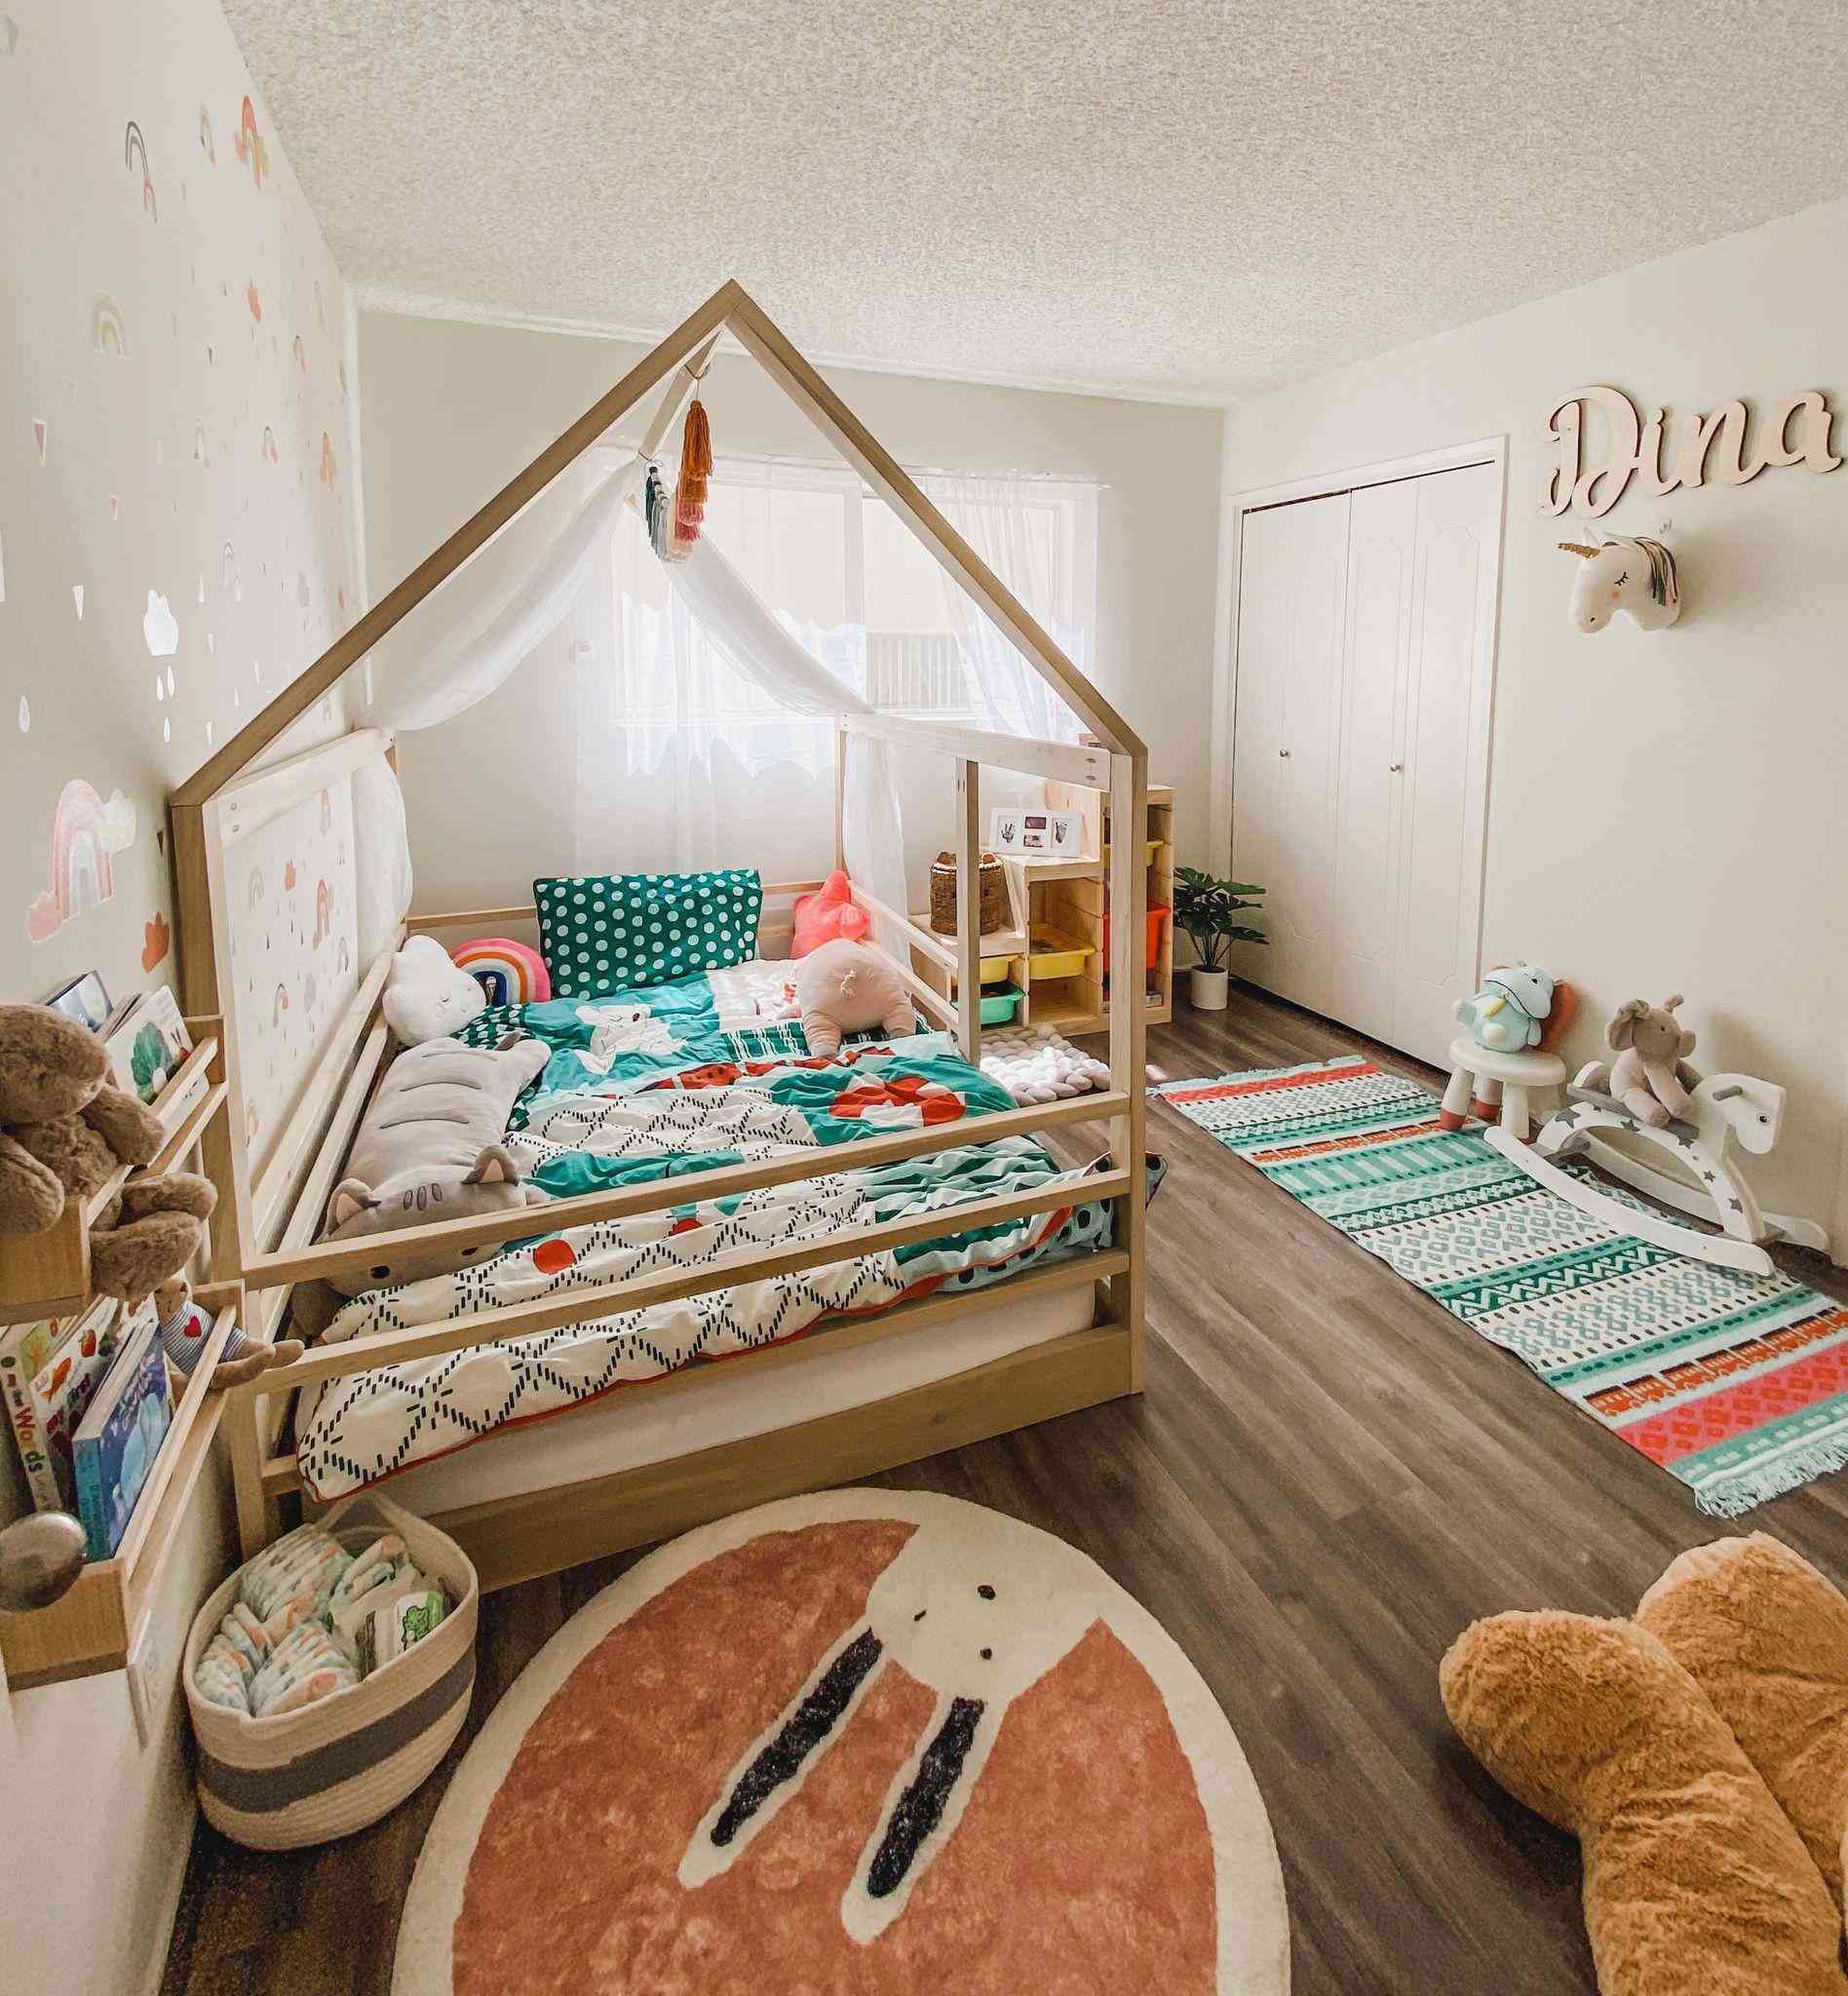 Mẹ trẻ 26 tuổi tự tay thiết kế phòng ngủ cho con gái khiến nhiều người mê mẩn - 1 - kythuatcanhtac.com